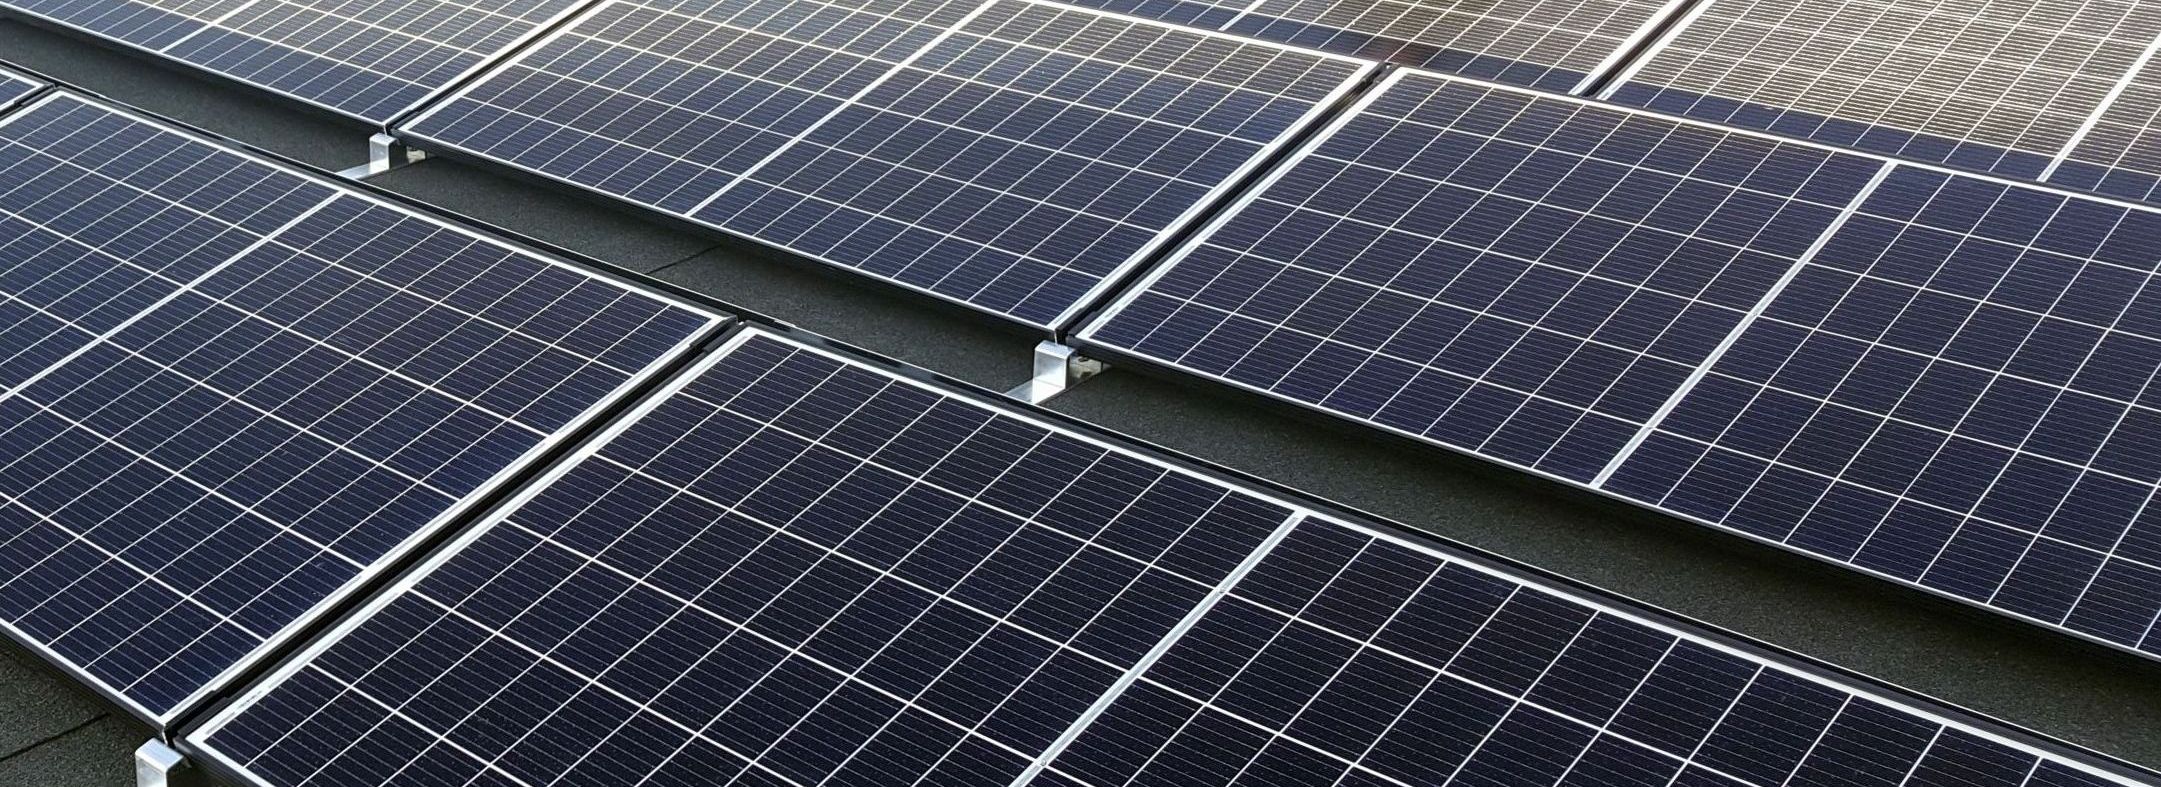 Typy fotovoltaických panelov a ich vlastnosti